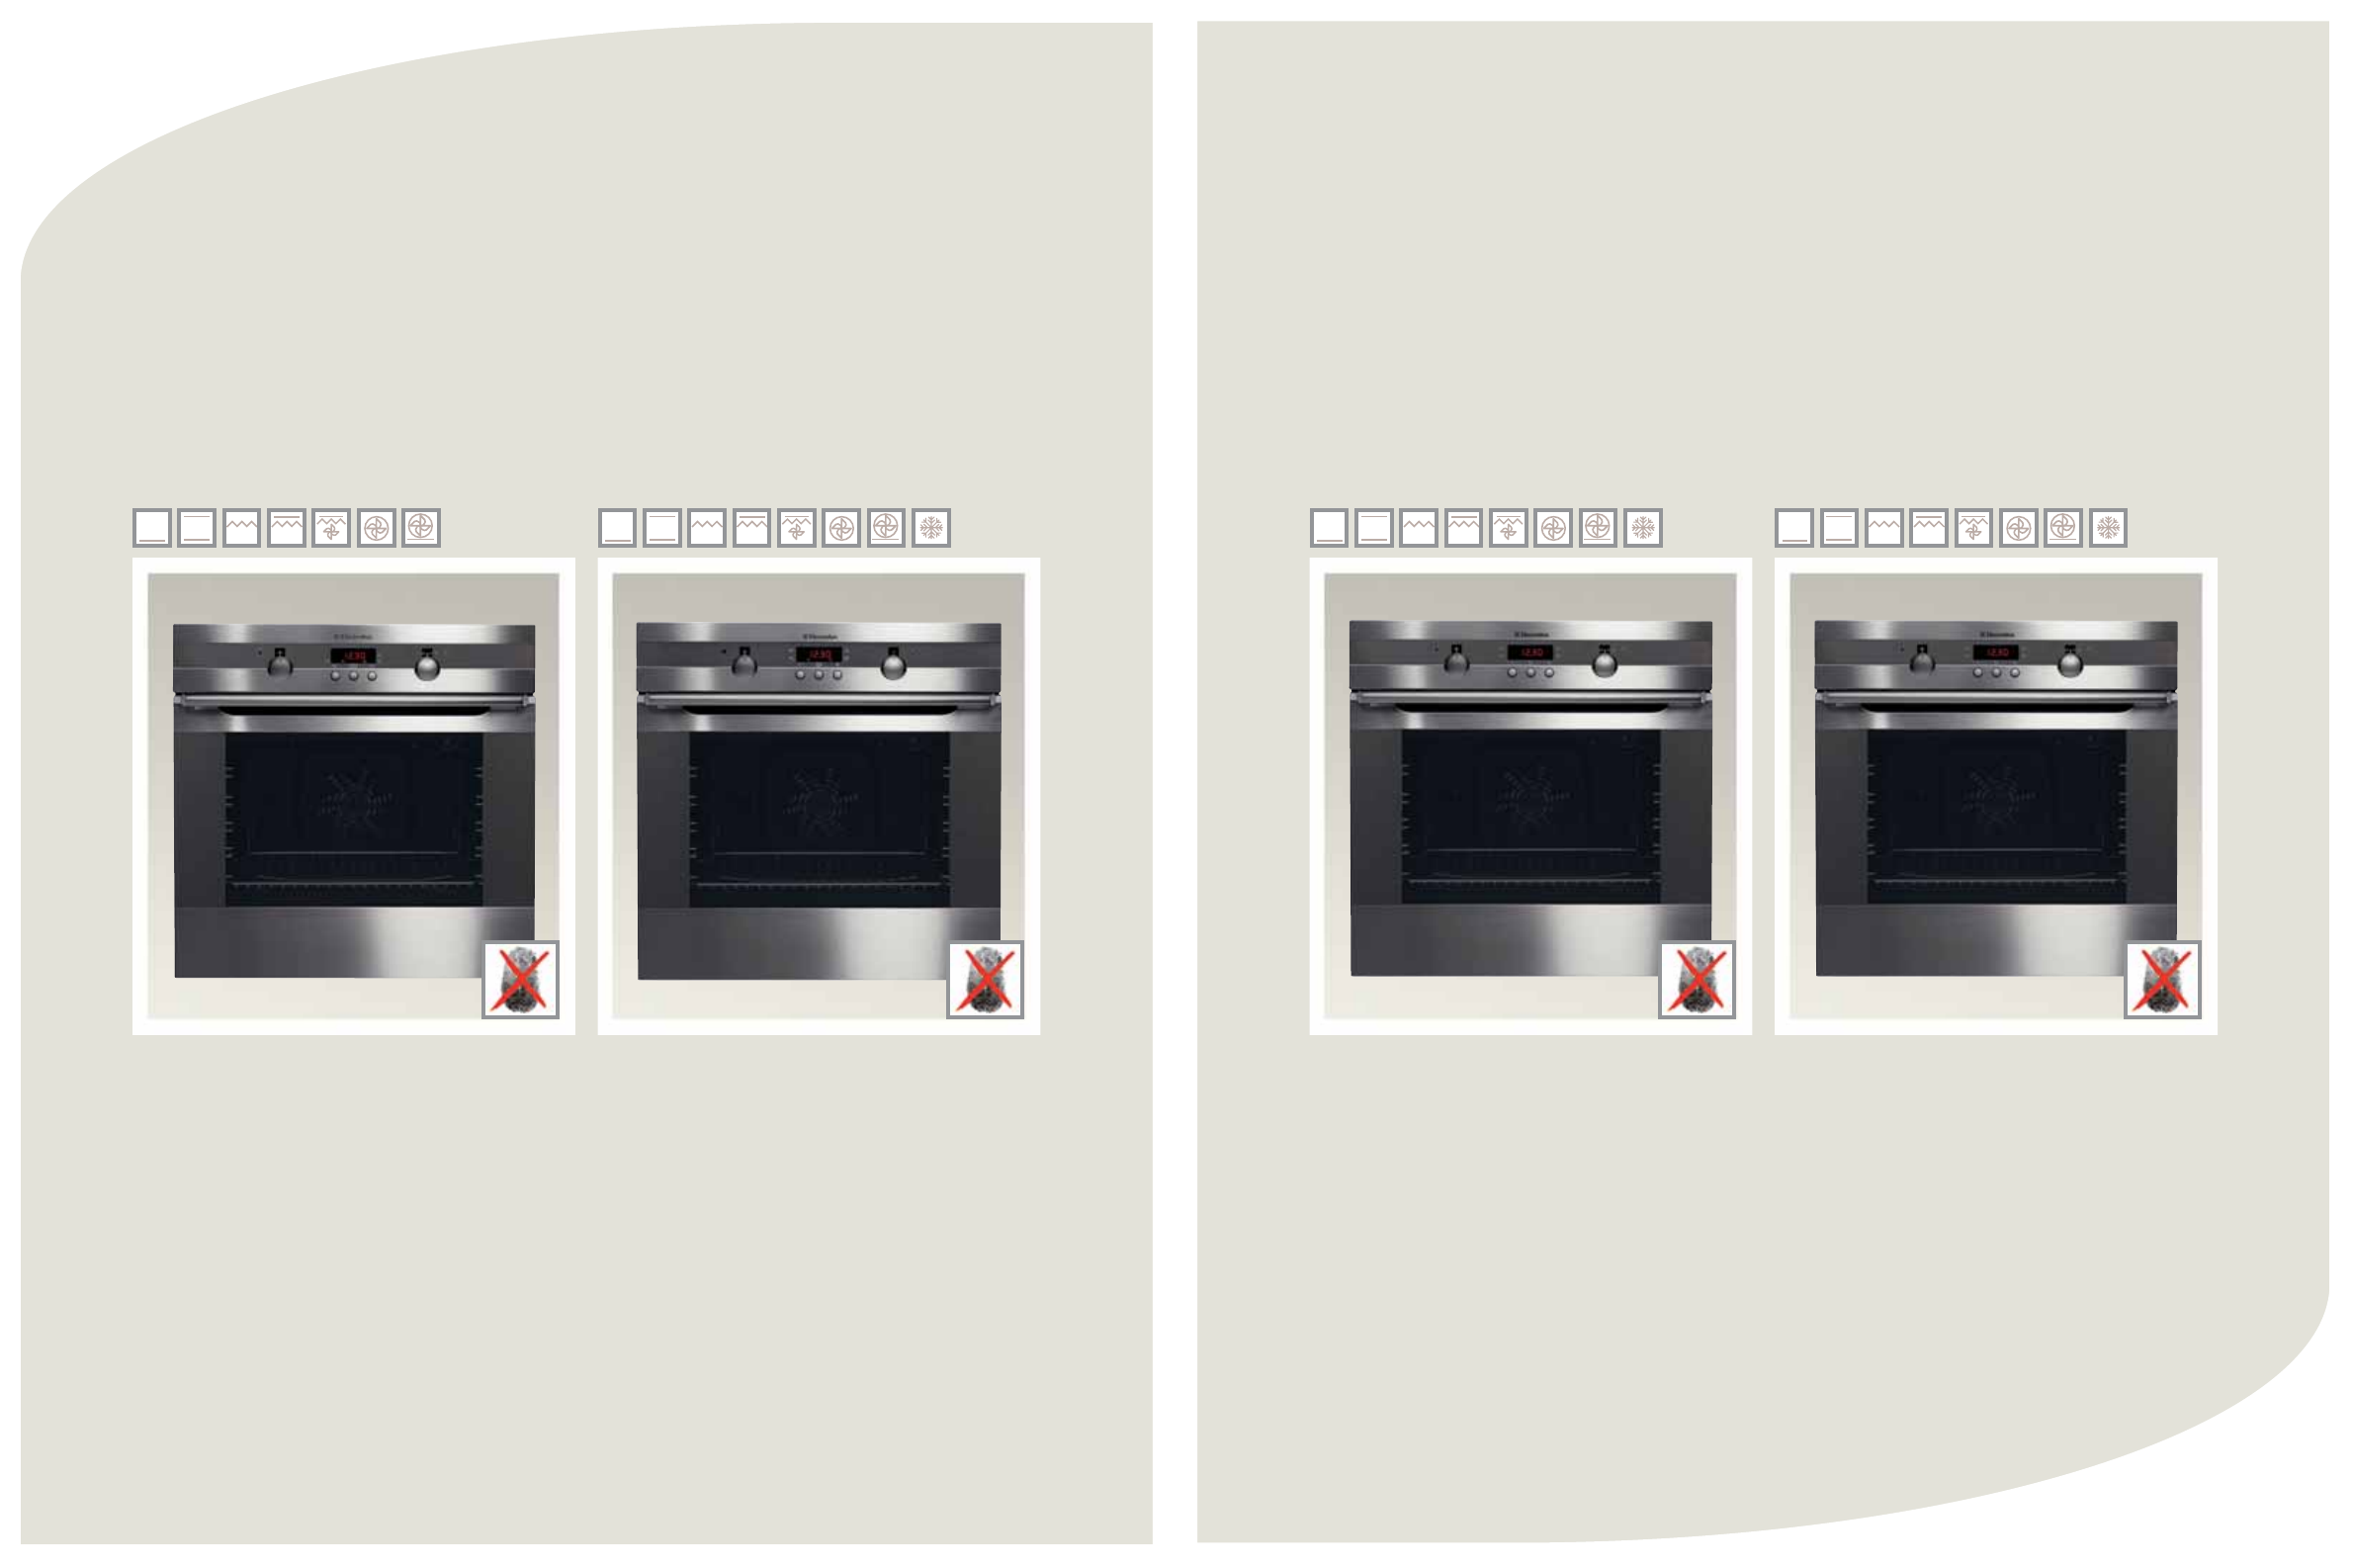 Духовой газовый шкаф независимый. ELX духовой шкаф. Микроволновка встроенная дверца слева направо. Встроенная микроволновка открывается слева направо.